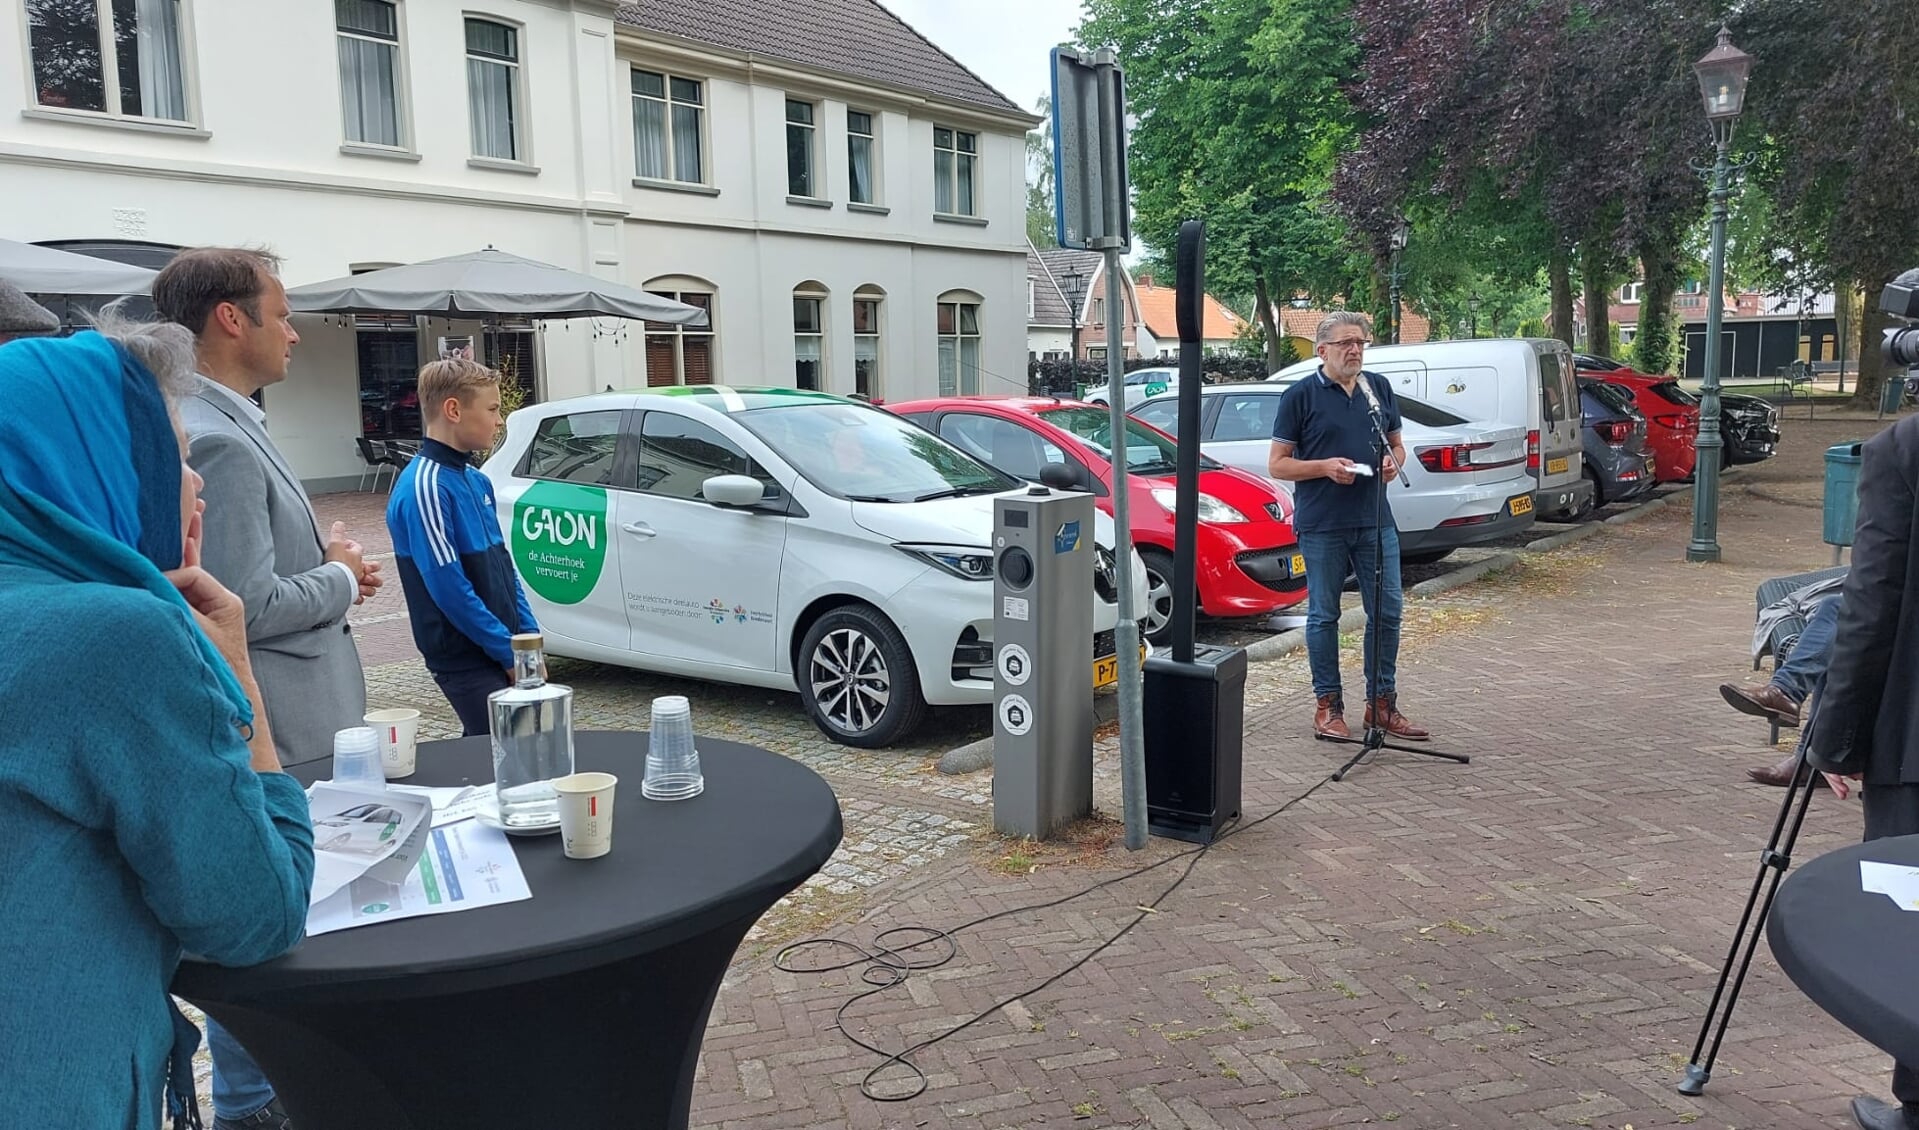 Ab te Winkel, eerste abonnementhouder, geeft uitleg over de deelauto. Foto: PR